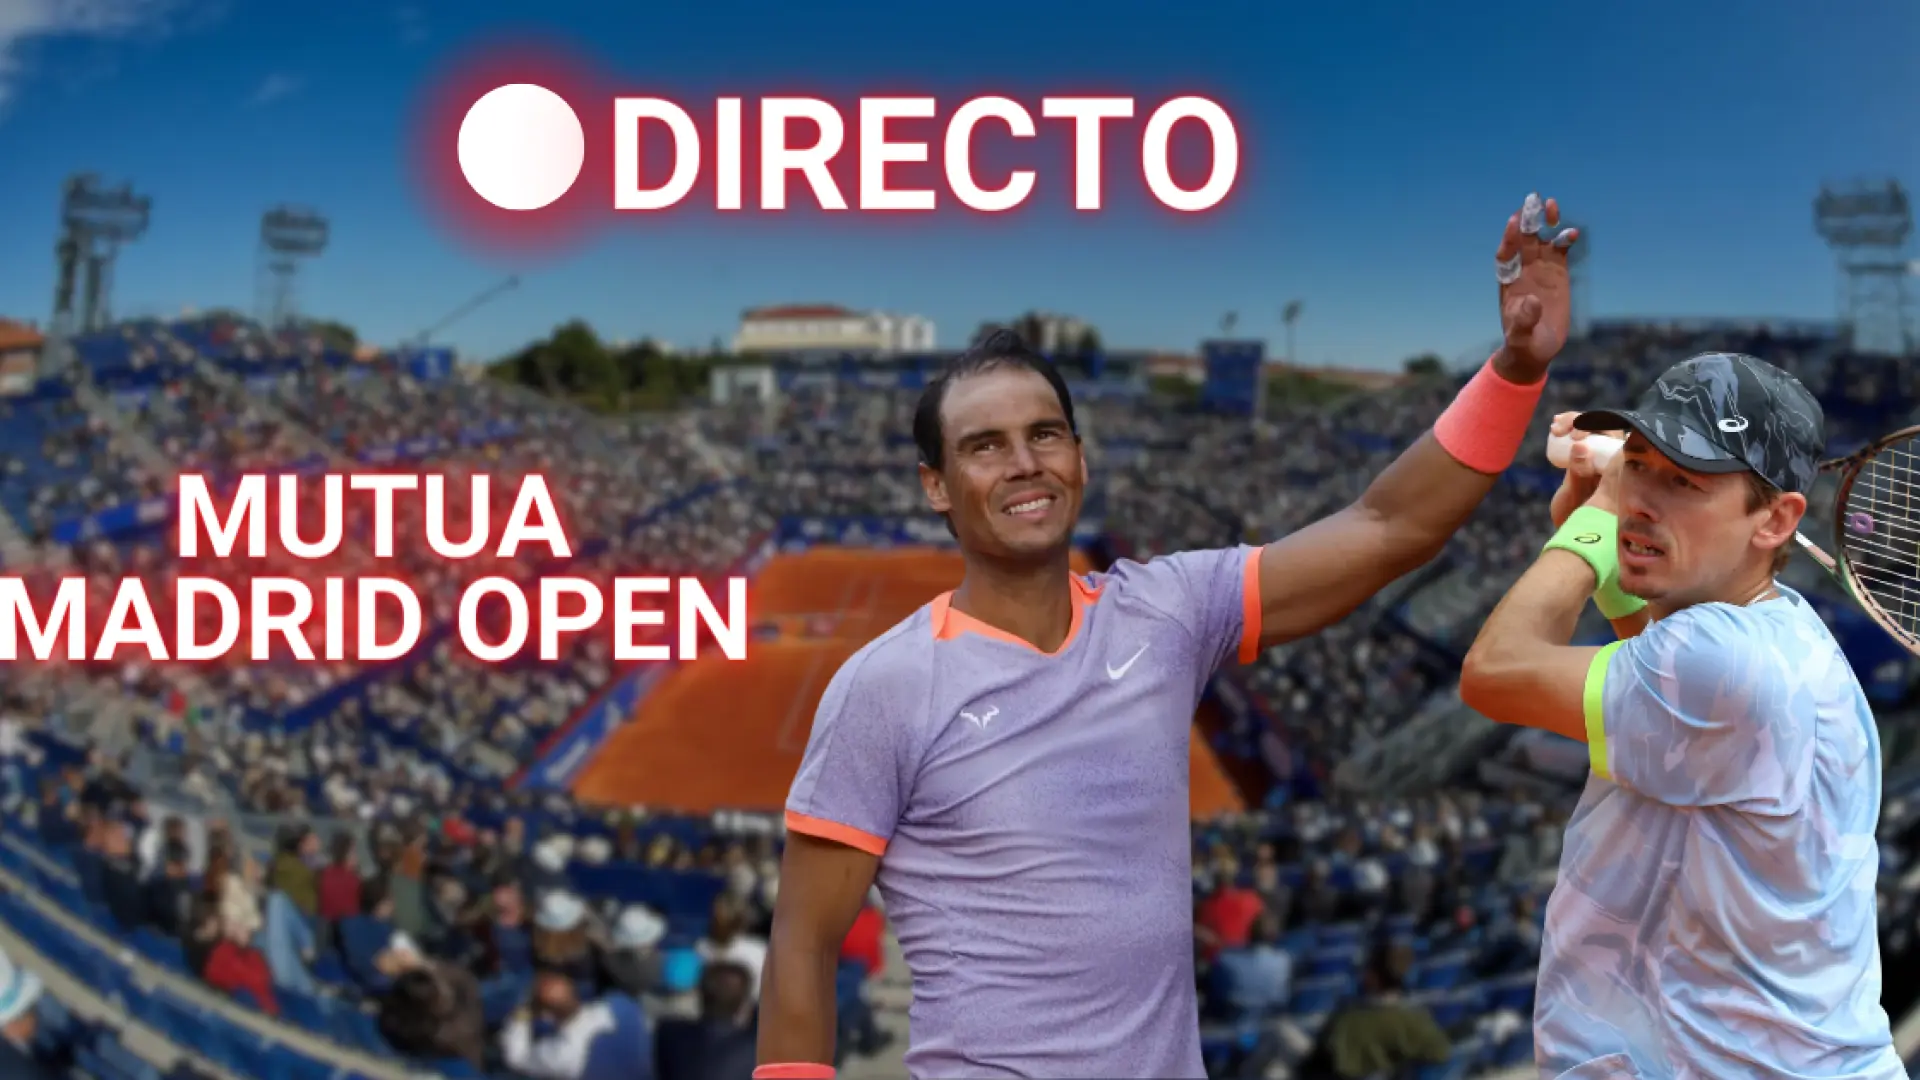 Nadal – De Miñaur hoy, en directo: partido de tenis del Mutua Madrid Open en vivo